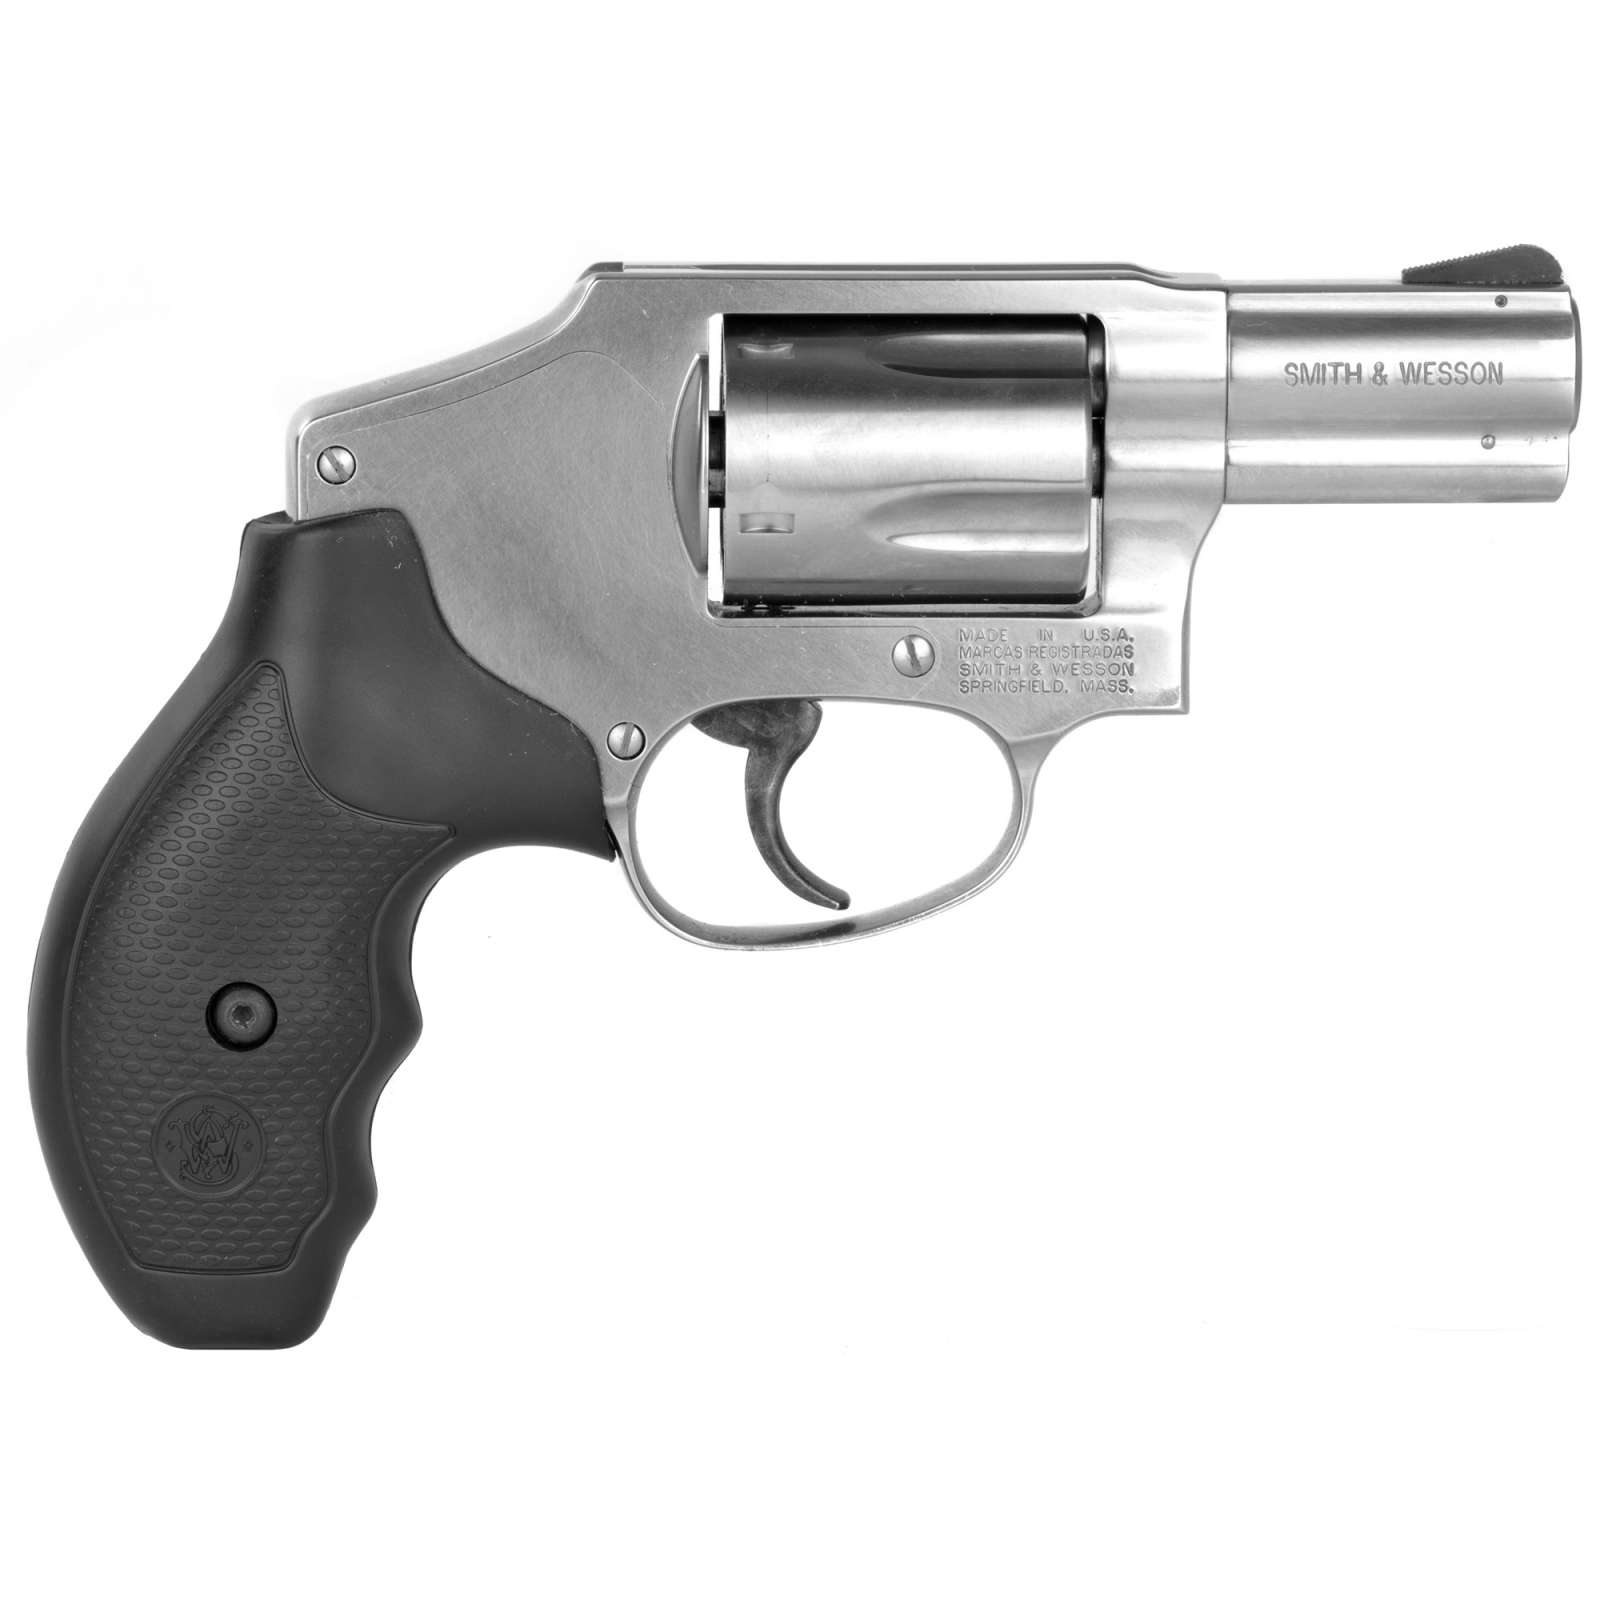 Smith & Wesson 163690 640 Internal Hammer 357 Mag 5 Round 2.13 ...